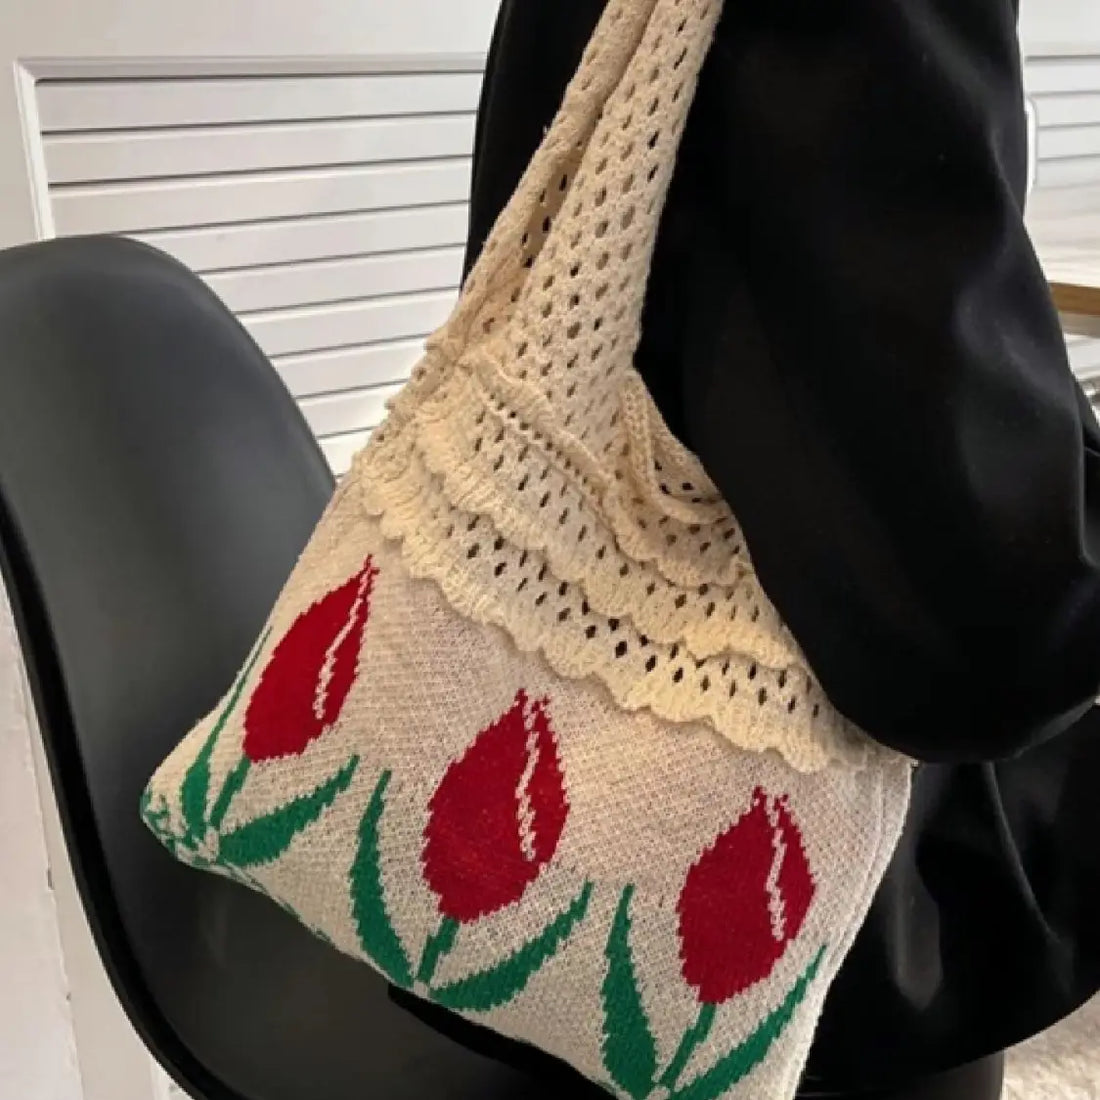 Crochet Vintage Floral Tote Bag